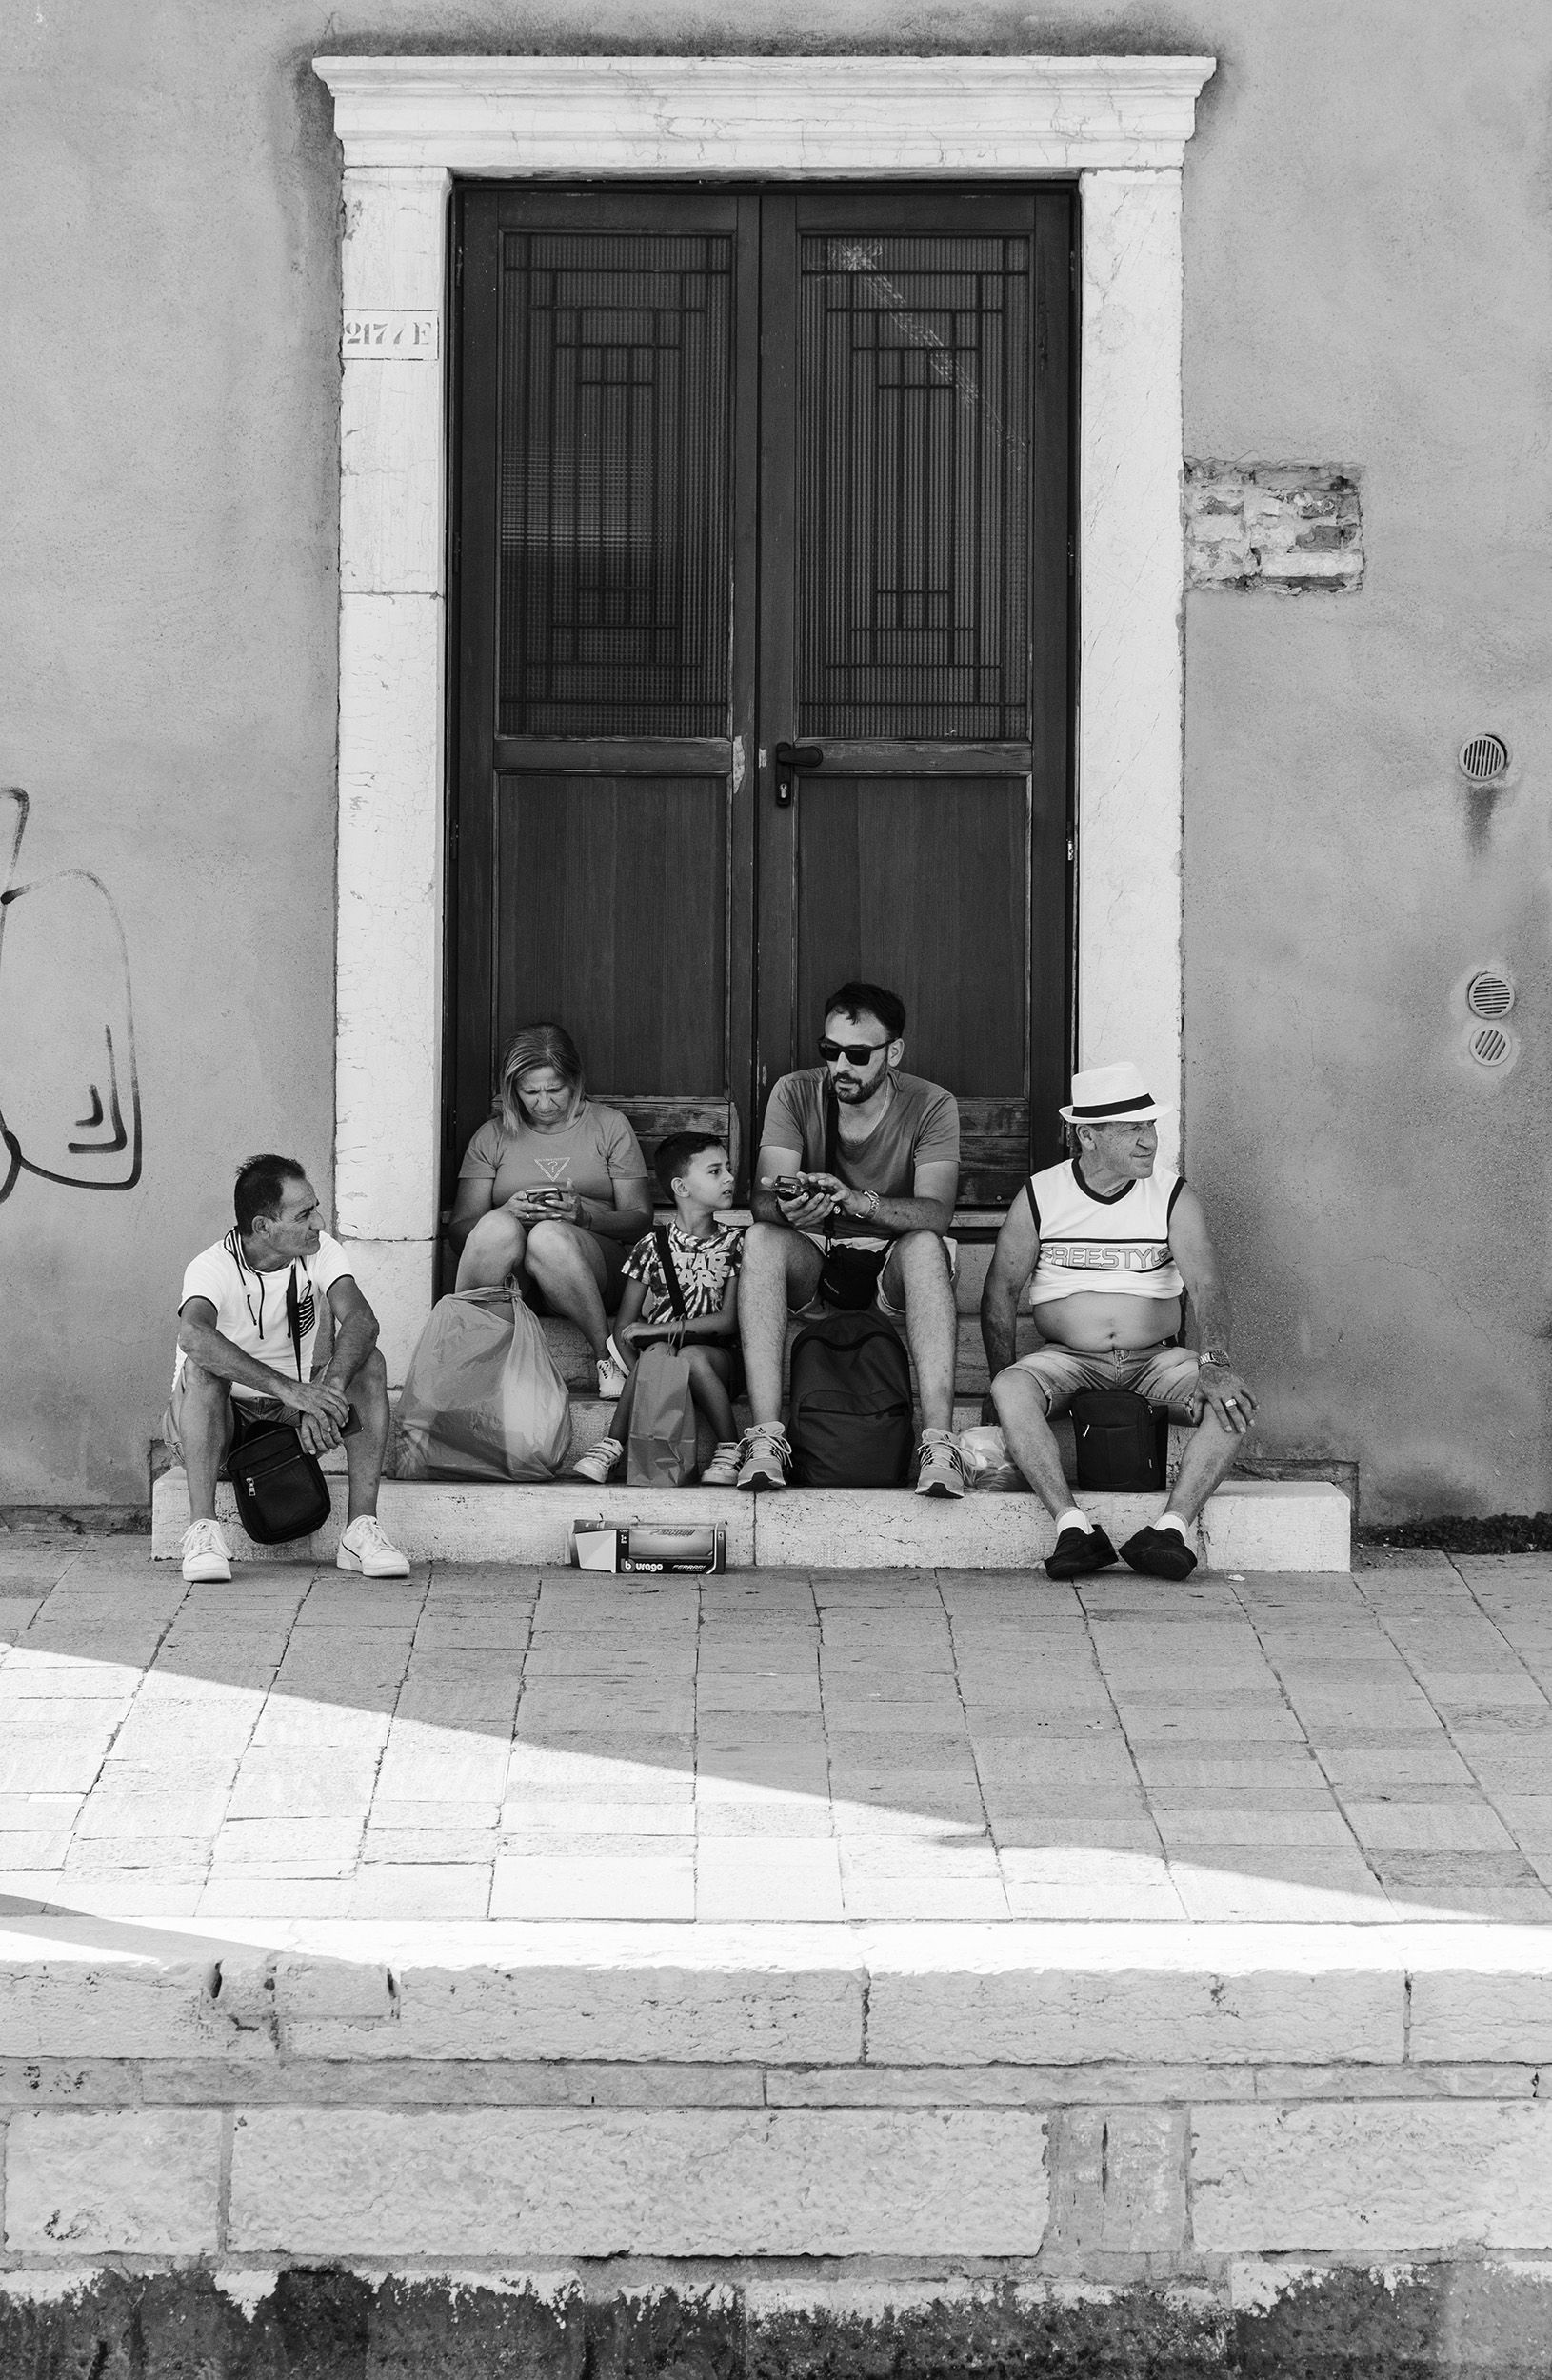 Turisti Per Caso - Digital photo by Isabella Dellolio